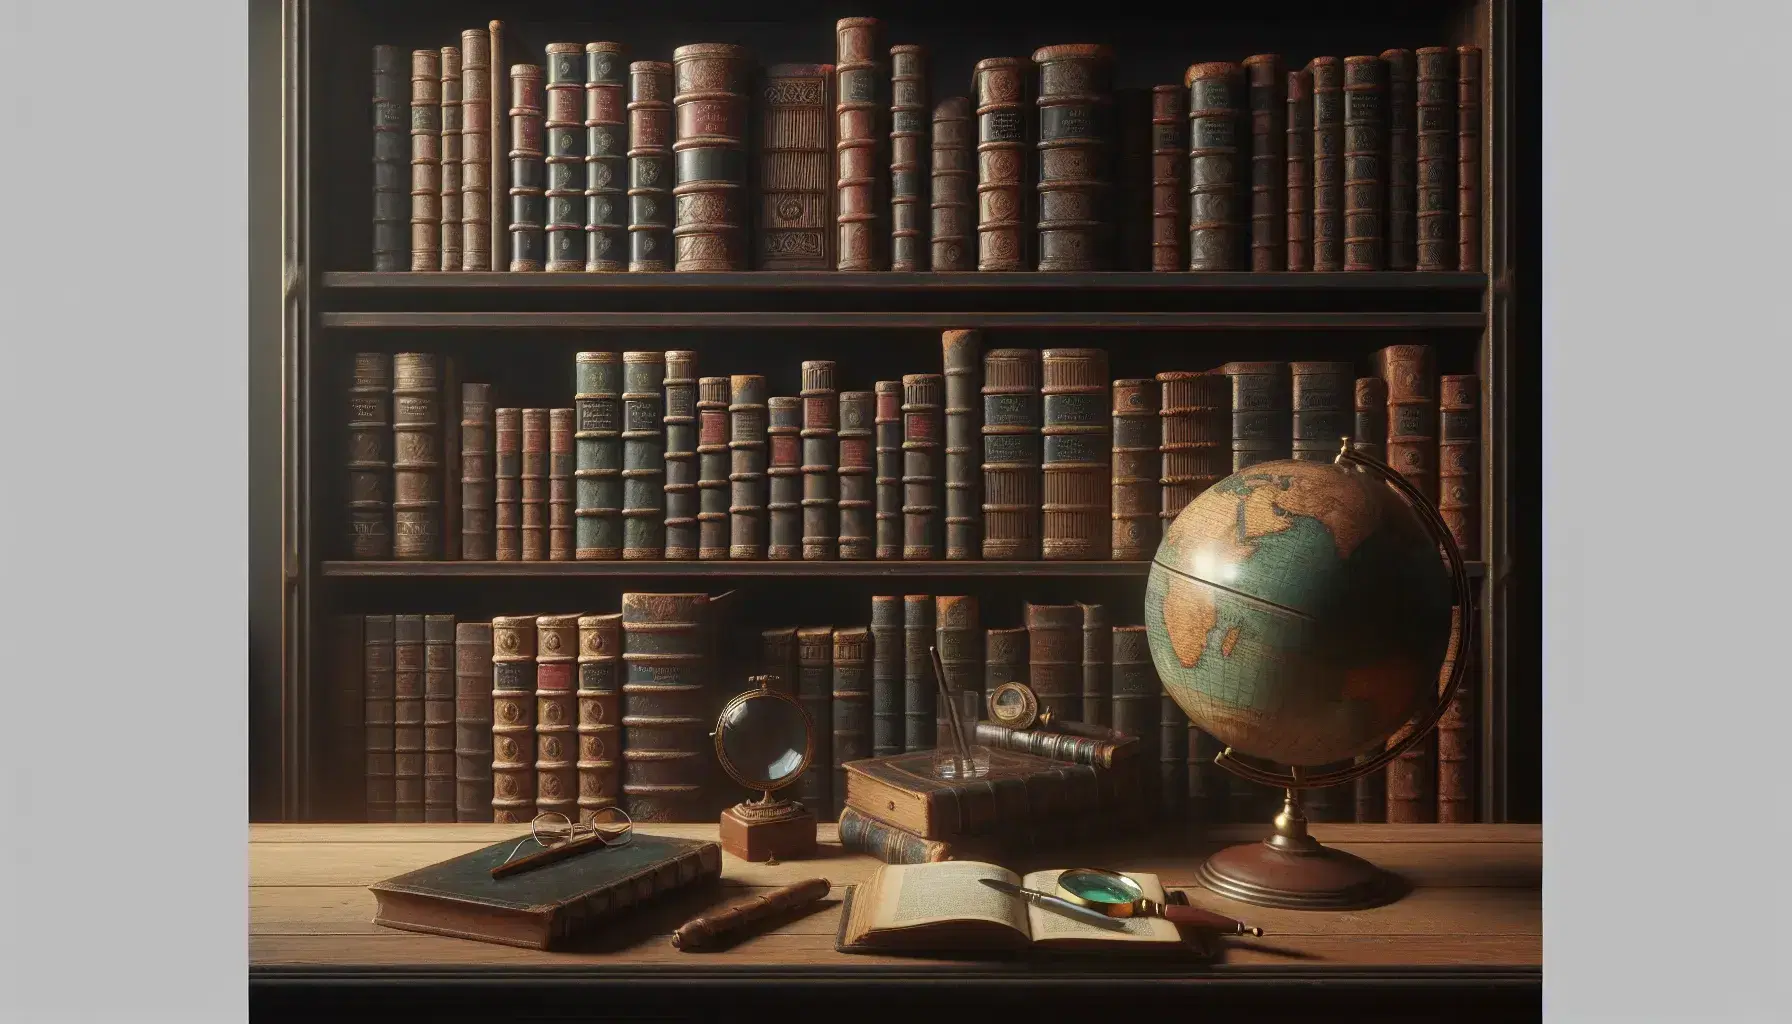 Estantería de madera oscura con libros antiguos de lomos de cuero, globo terráqueo antiguo, lupa y gafas sobre mesa, en ambiente cálido de estudio.